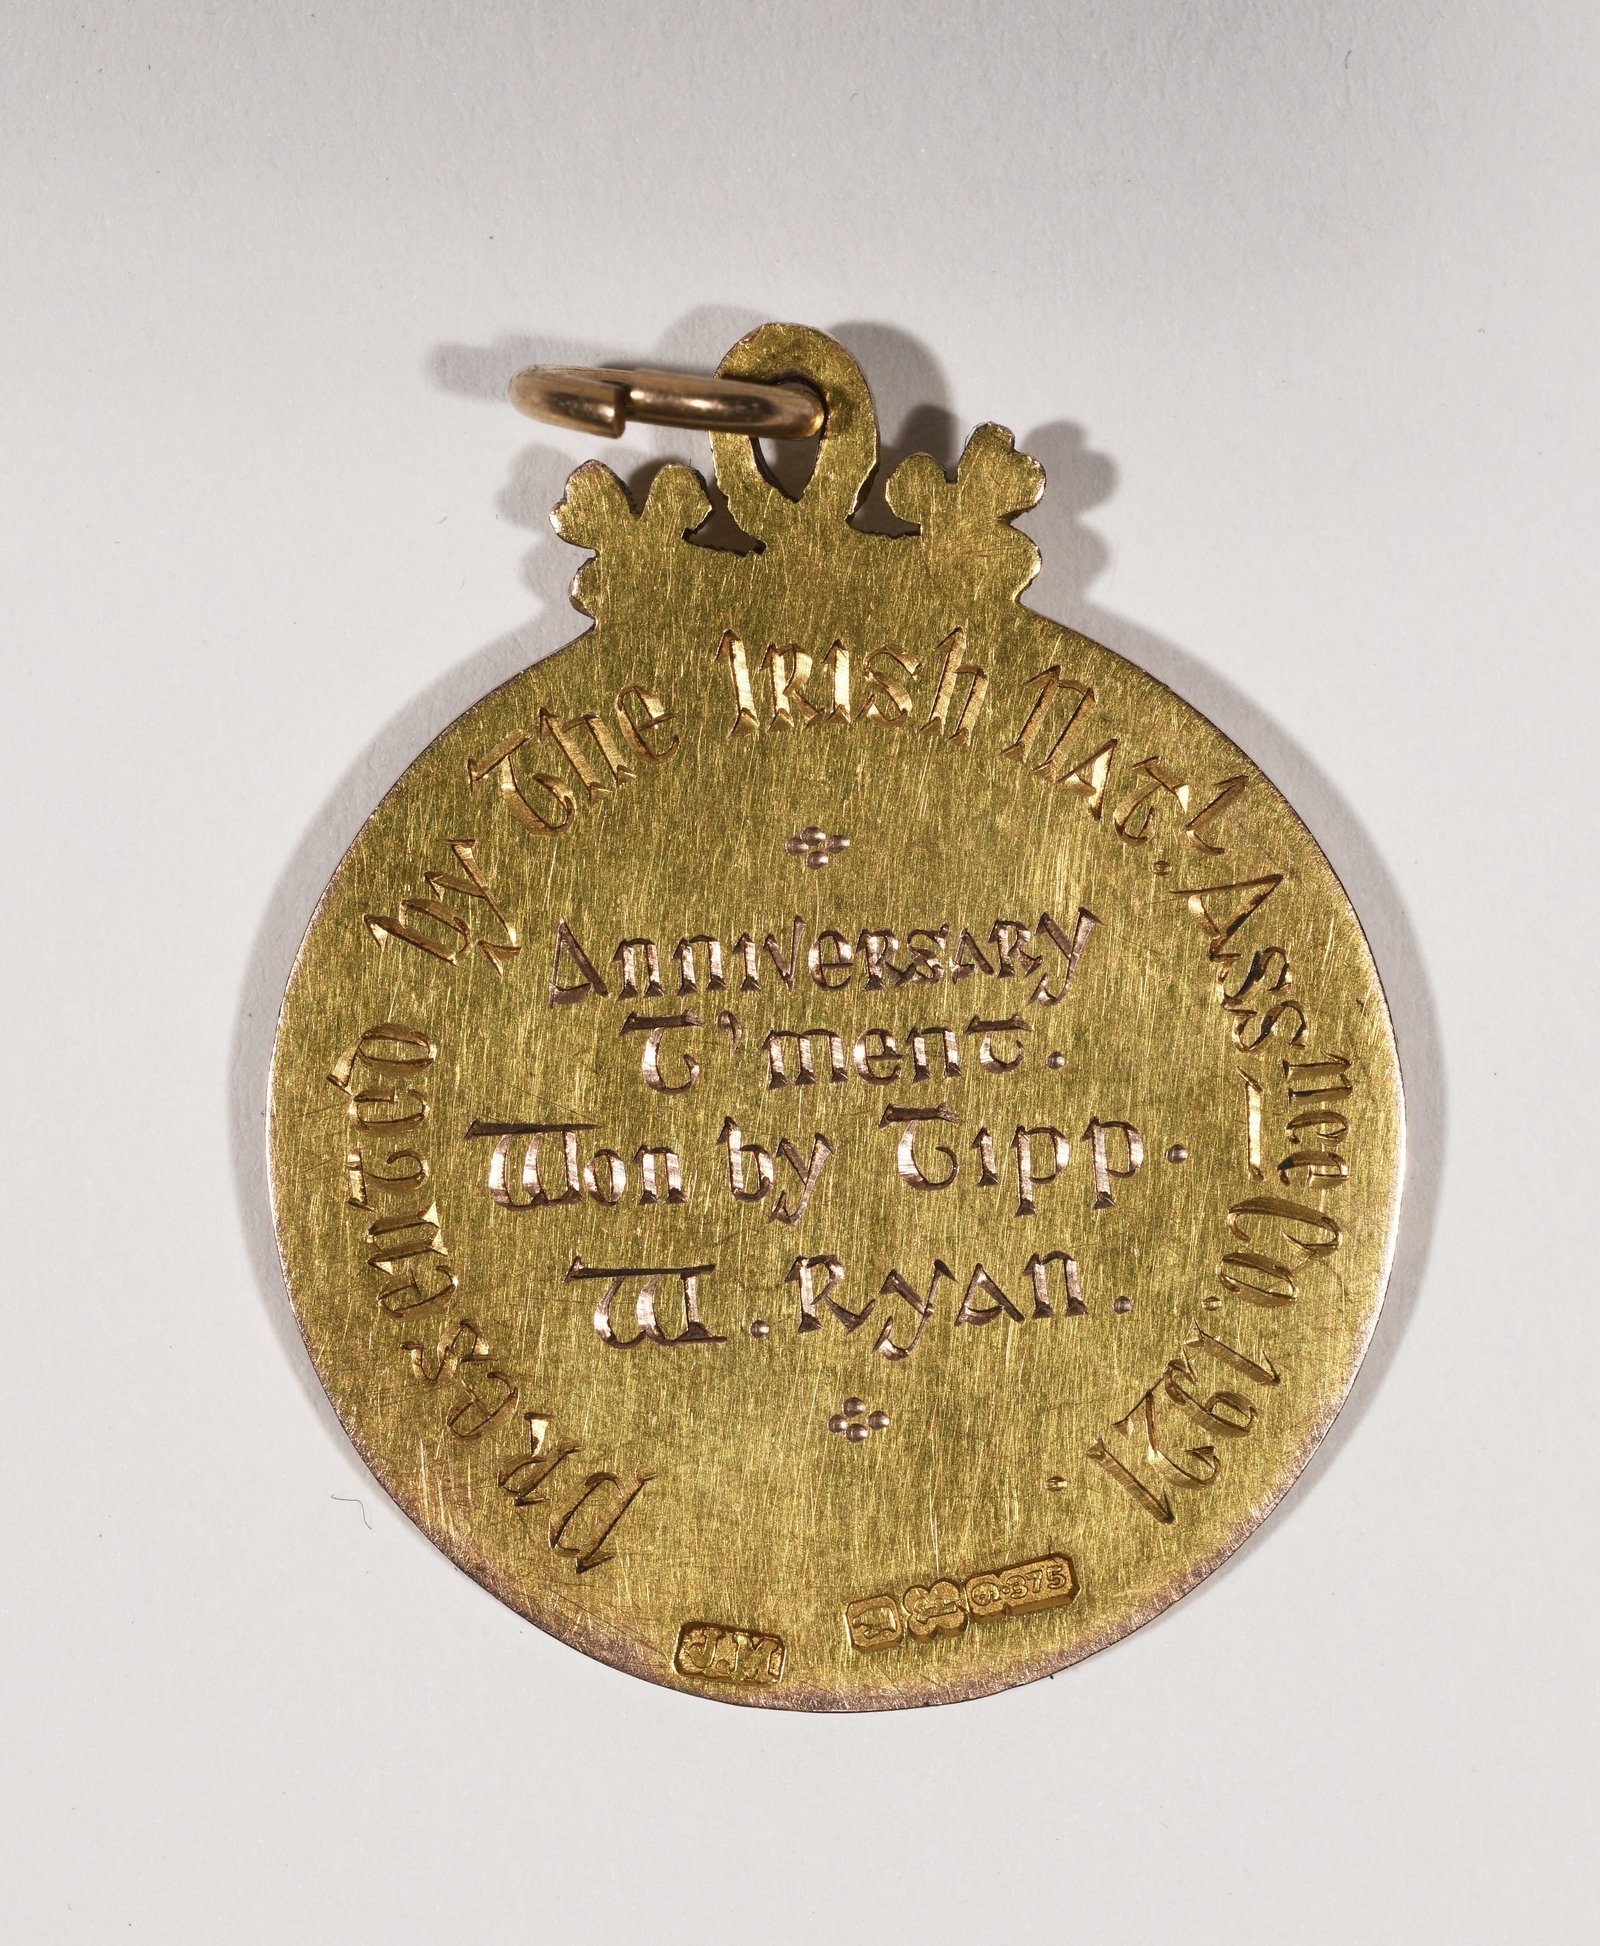 Image - Bill Ryan's 1921 medal